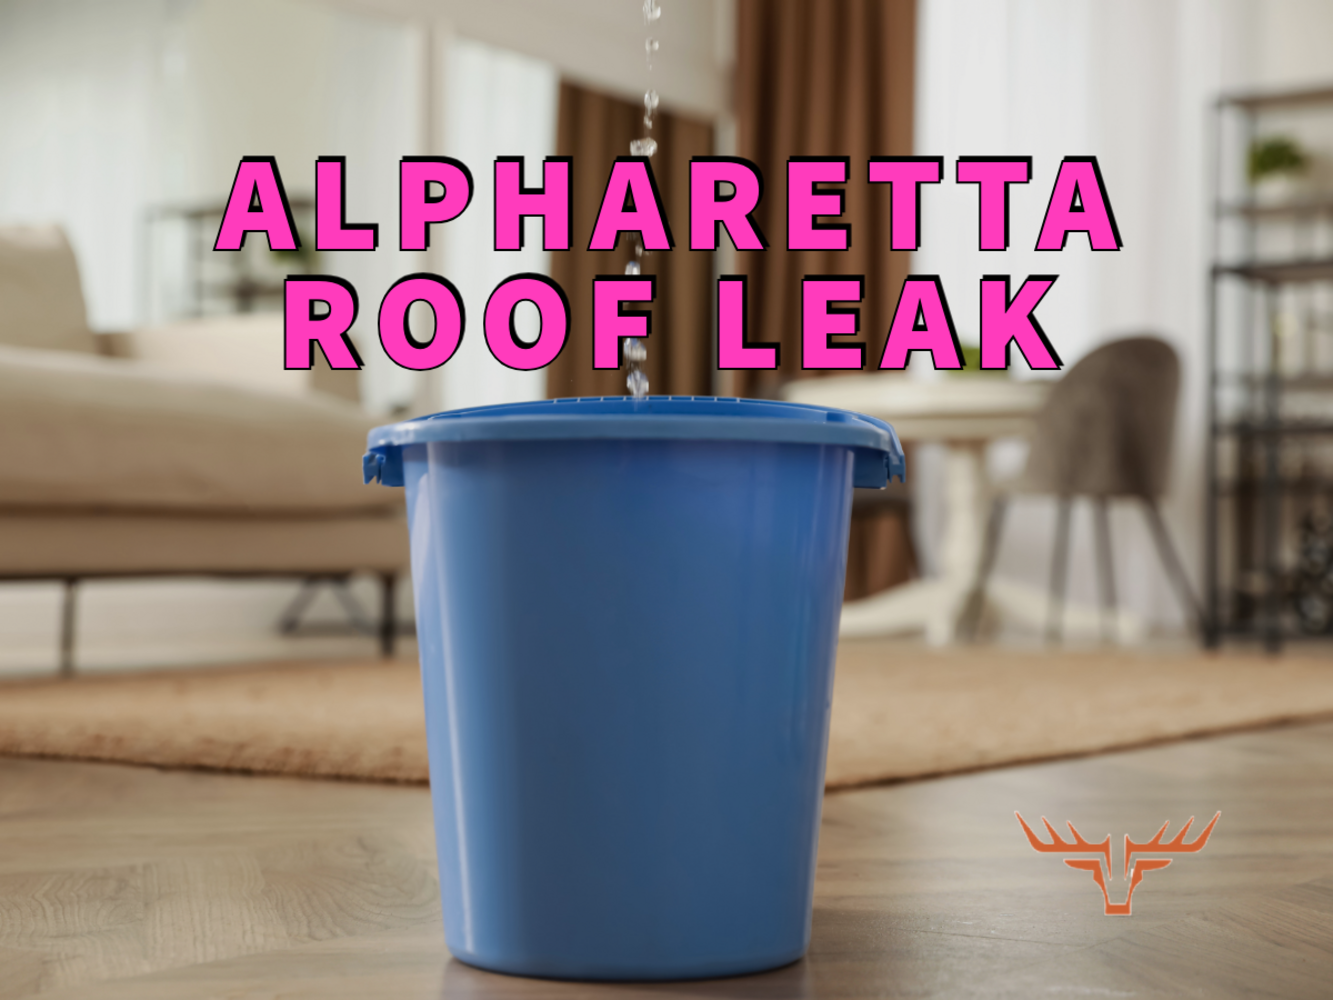 Alpharetta roof leak written in purple over image of water leaking into blue bucket from overhead